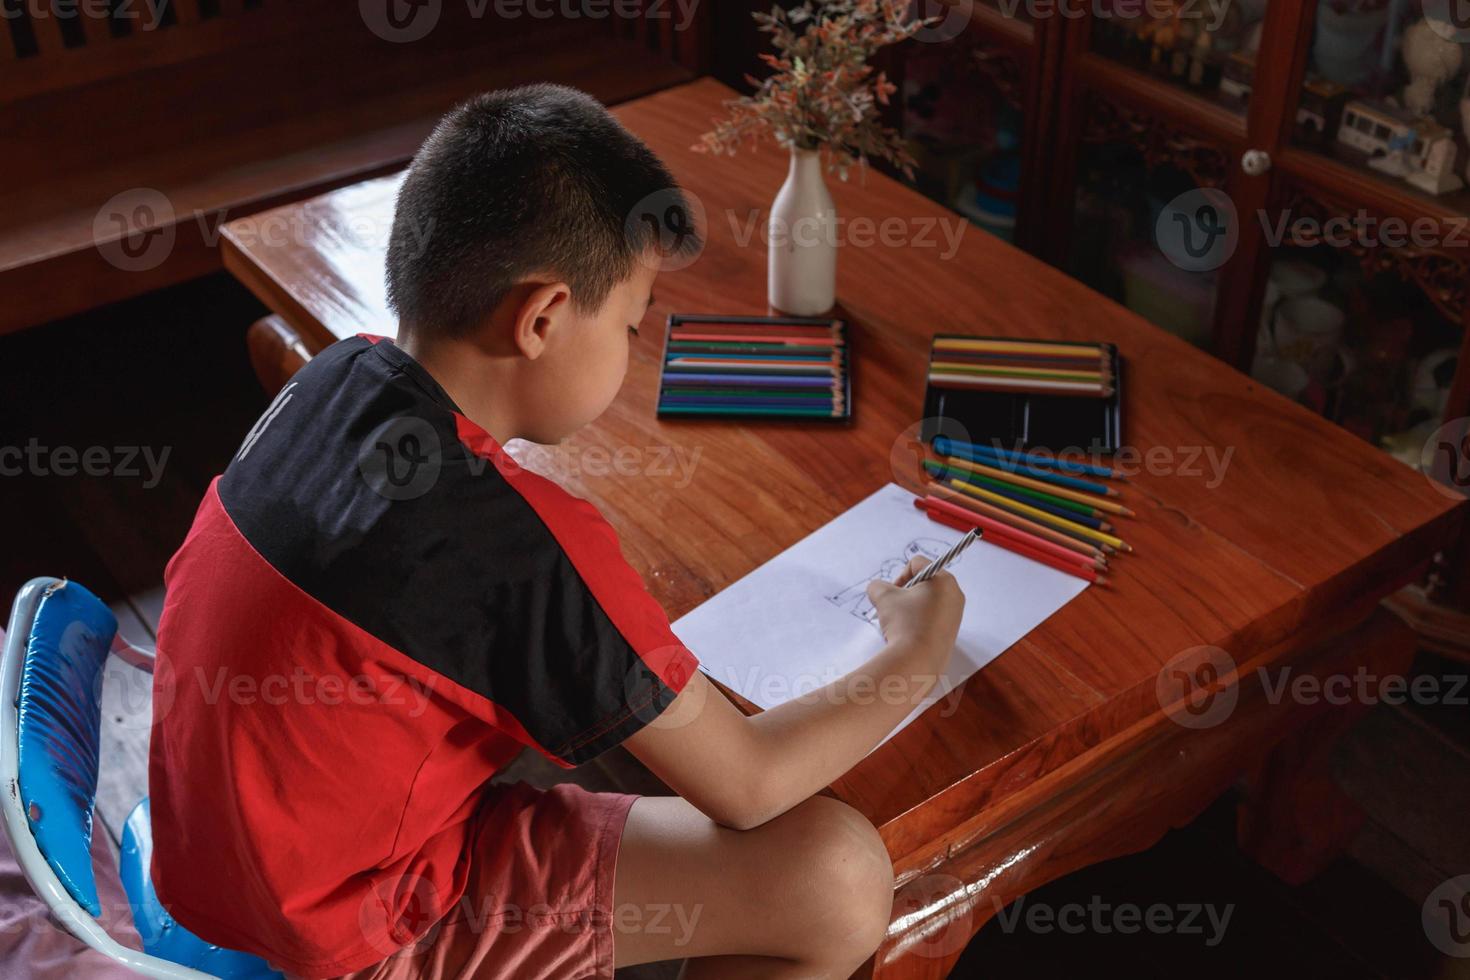 un ragazzo seduto a casa sua a disegnare e dipingere. foto